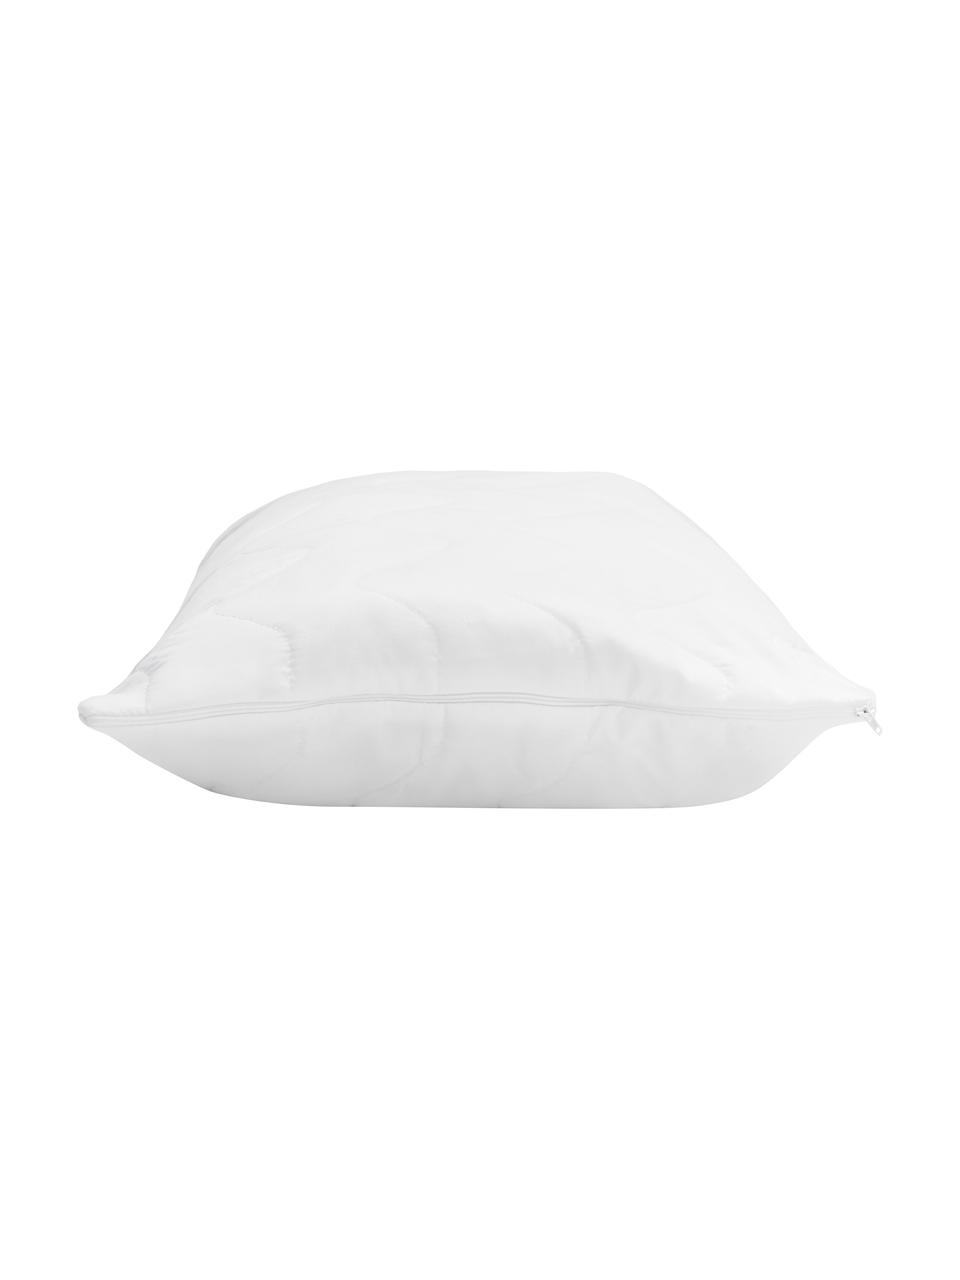 Wkład premium do poduszki Sia, 40x60, Biały, S 40 x D 60 cm